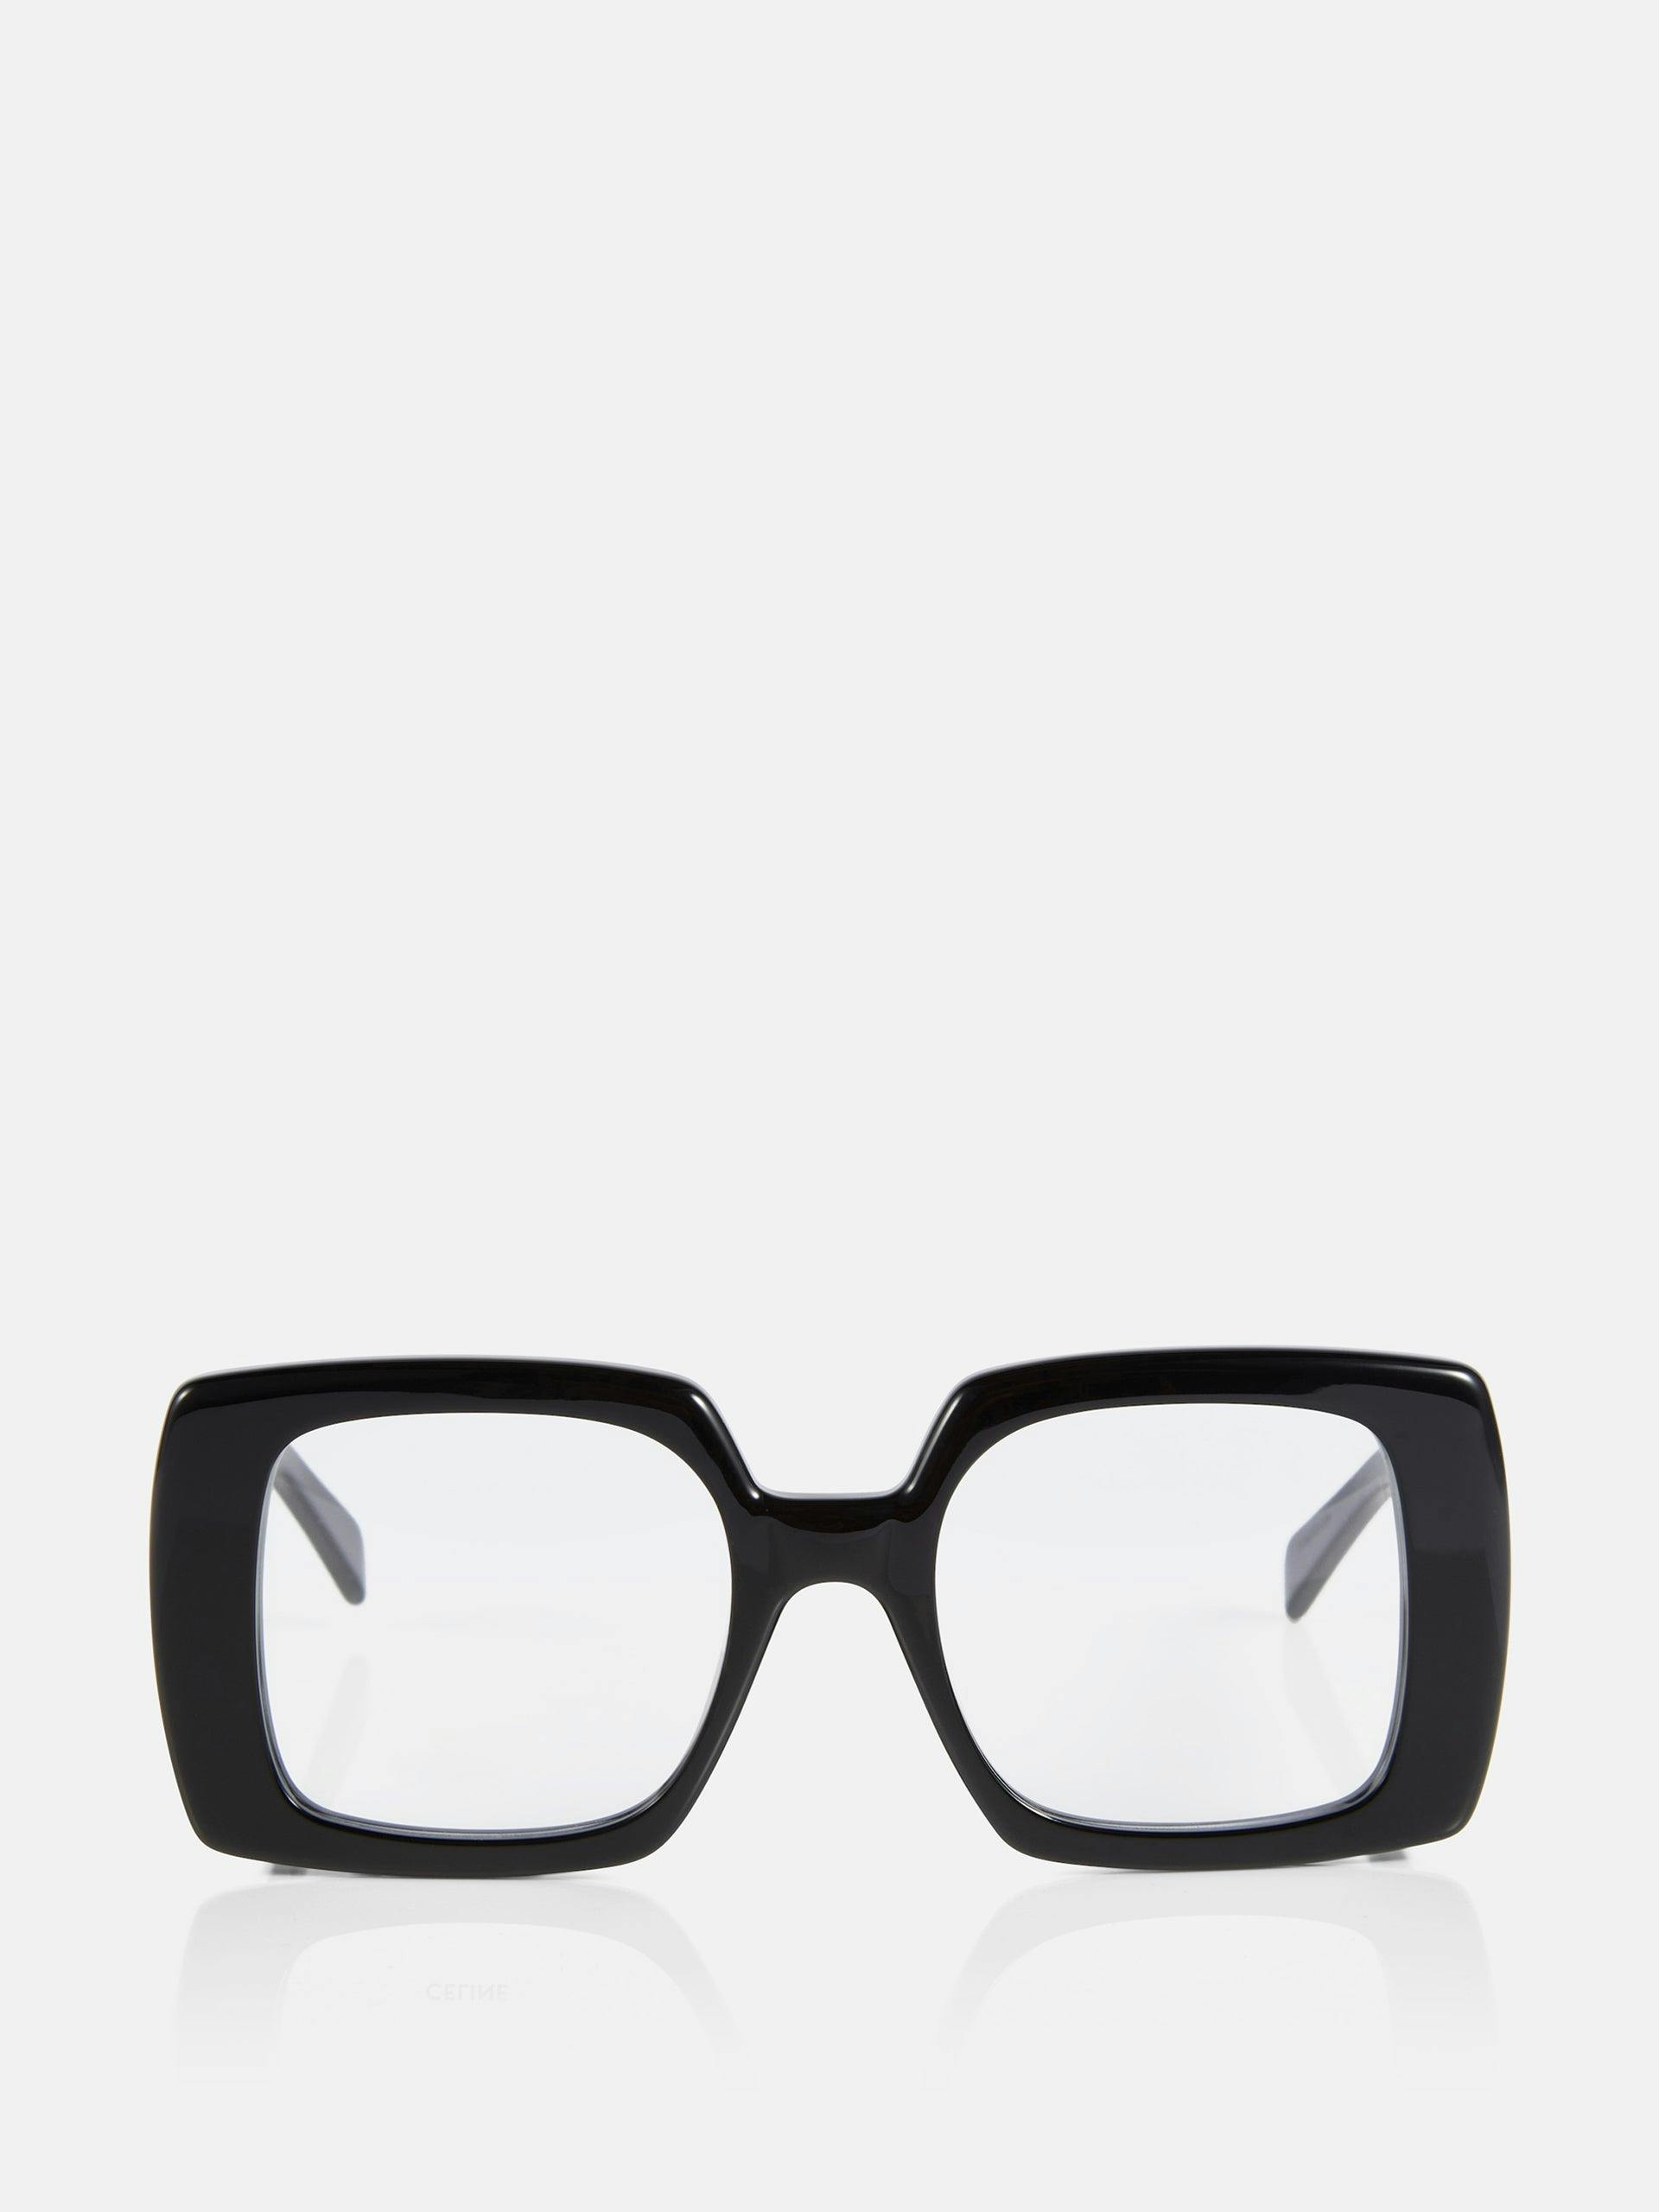 Oversized square black framed glasses